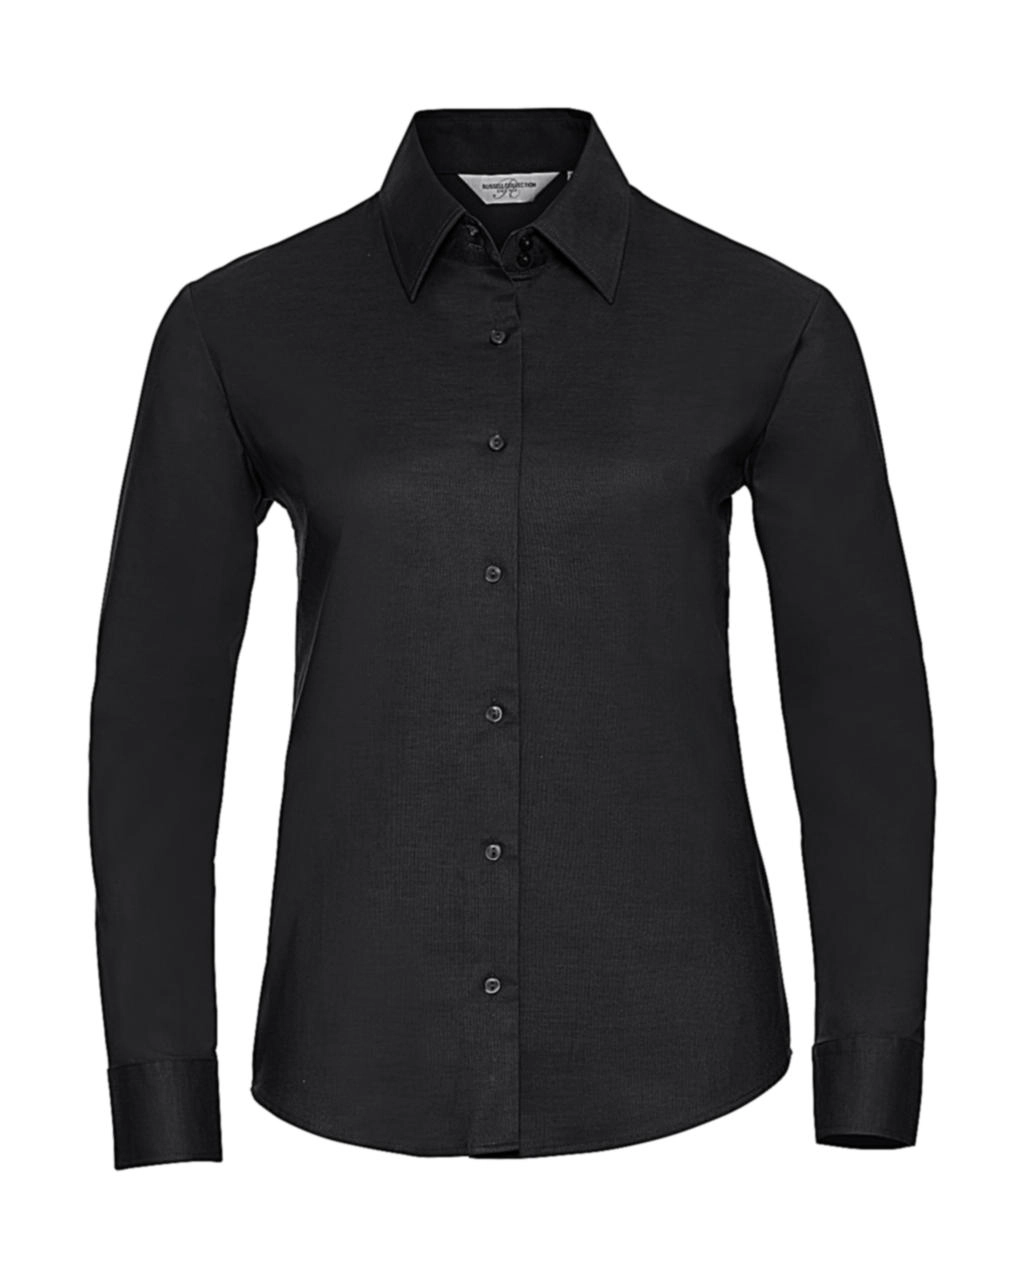 Ladies` Classic Oxford Shirt LS zum Besticken und Bedrucken in der Farbe Black mit Ihren Logo, Schriftzug oder Motiv.